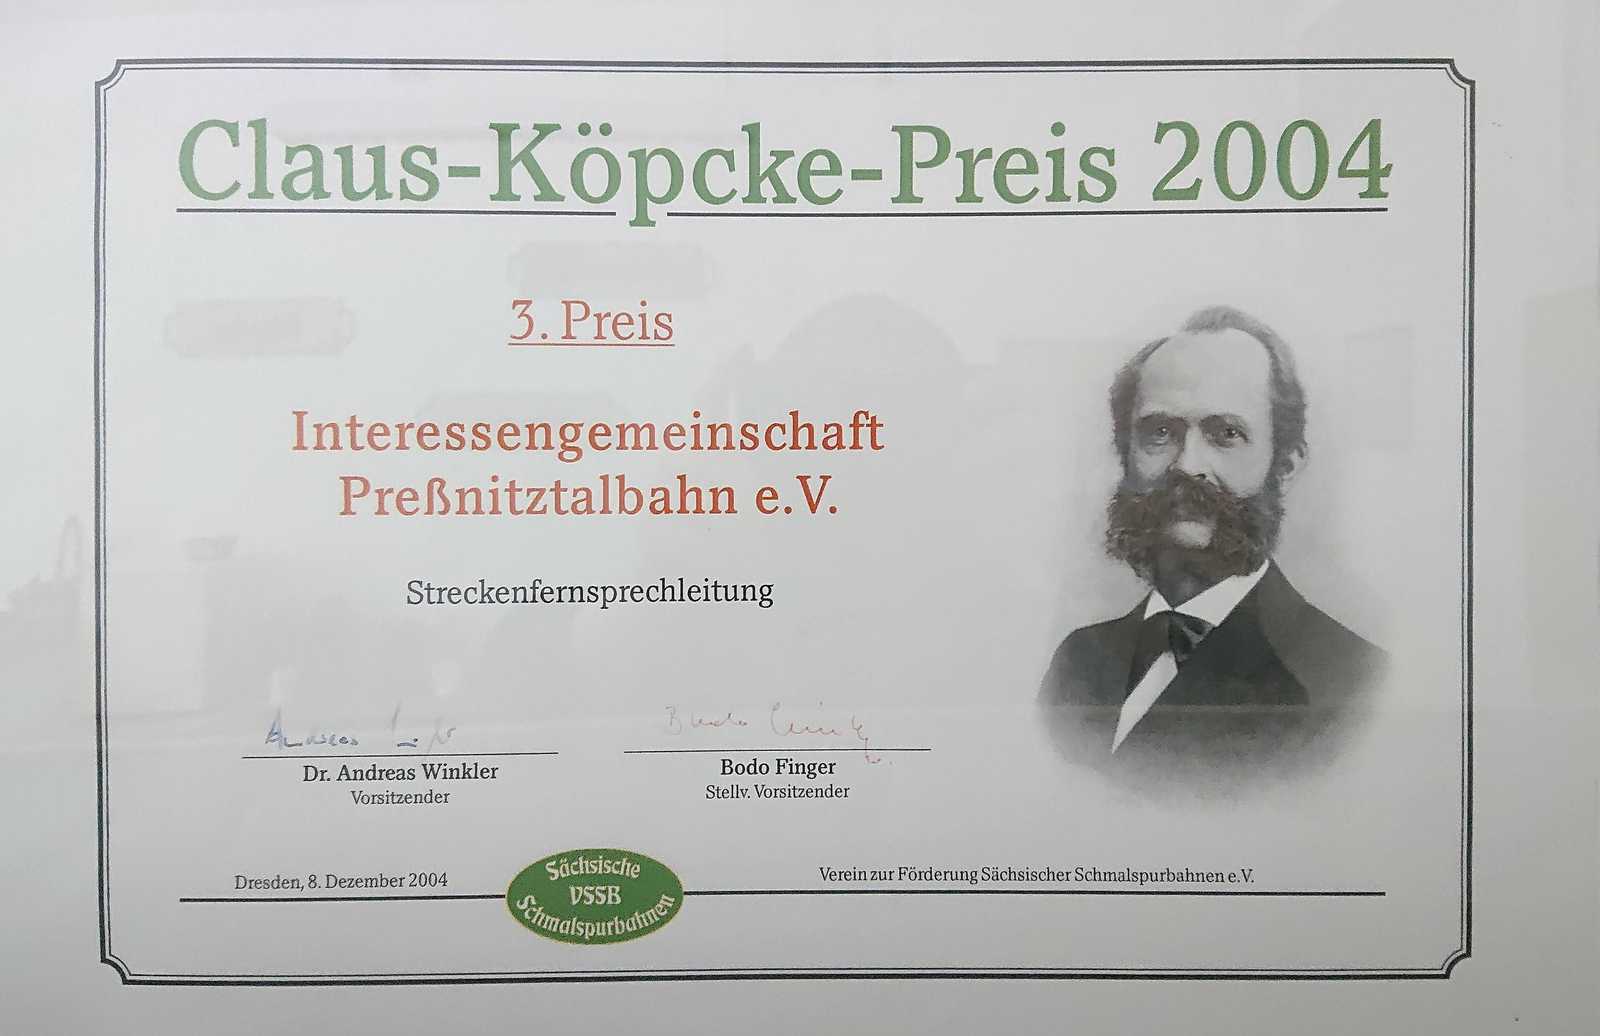 Urkunde zum „Claus-Köpcke-Preis 2004“ für den 3. Preis zum Projekt „Streckenfernsprechleitung“ der IG Preßnitztalbahn e.V.